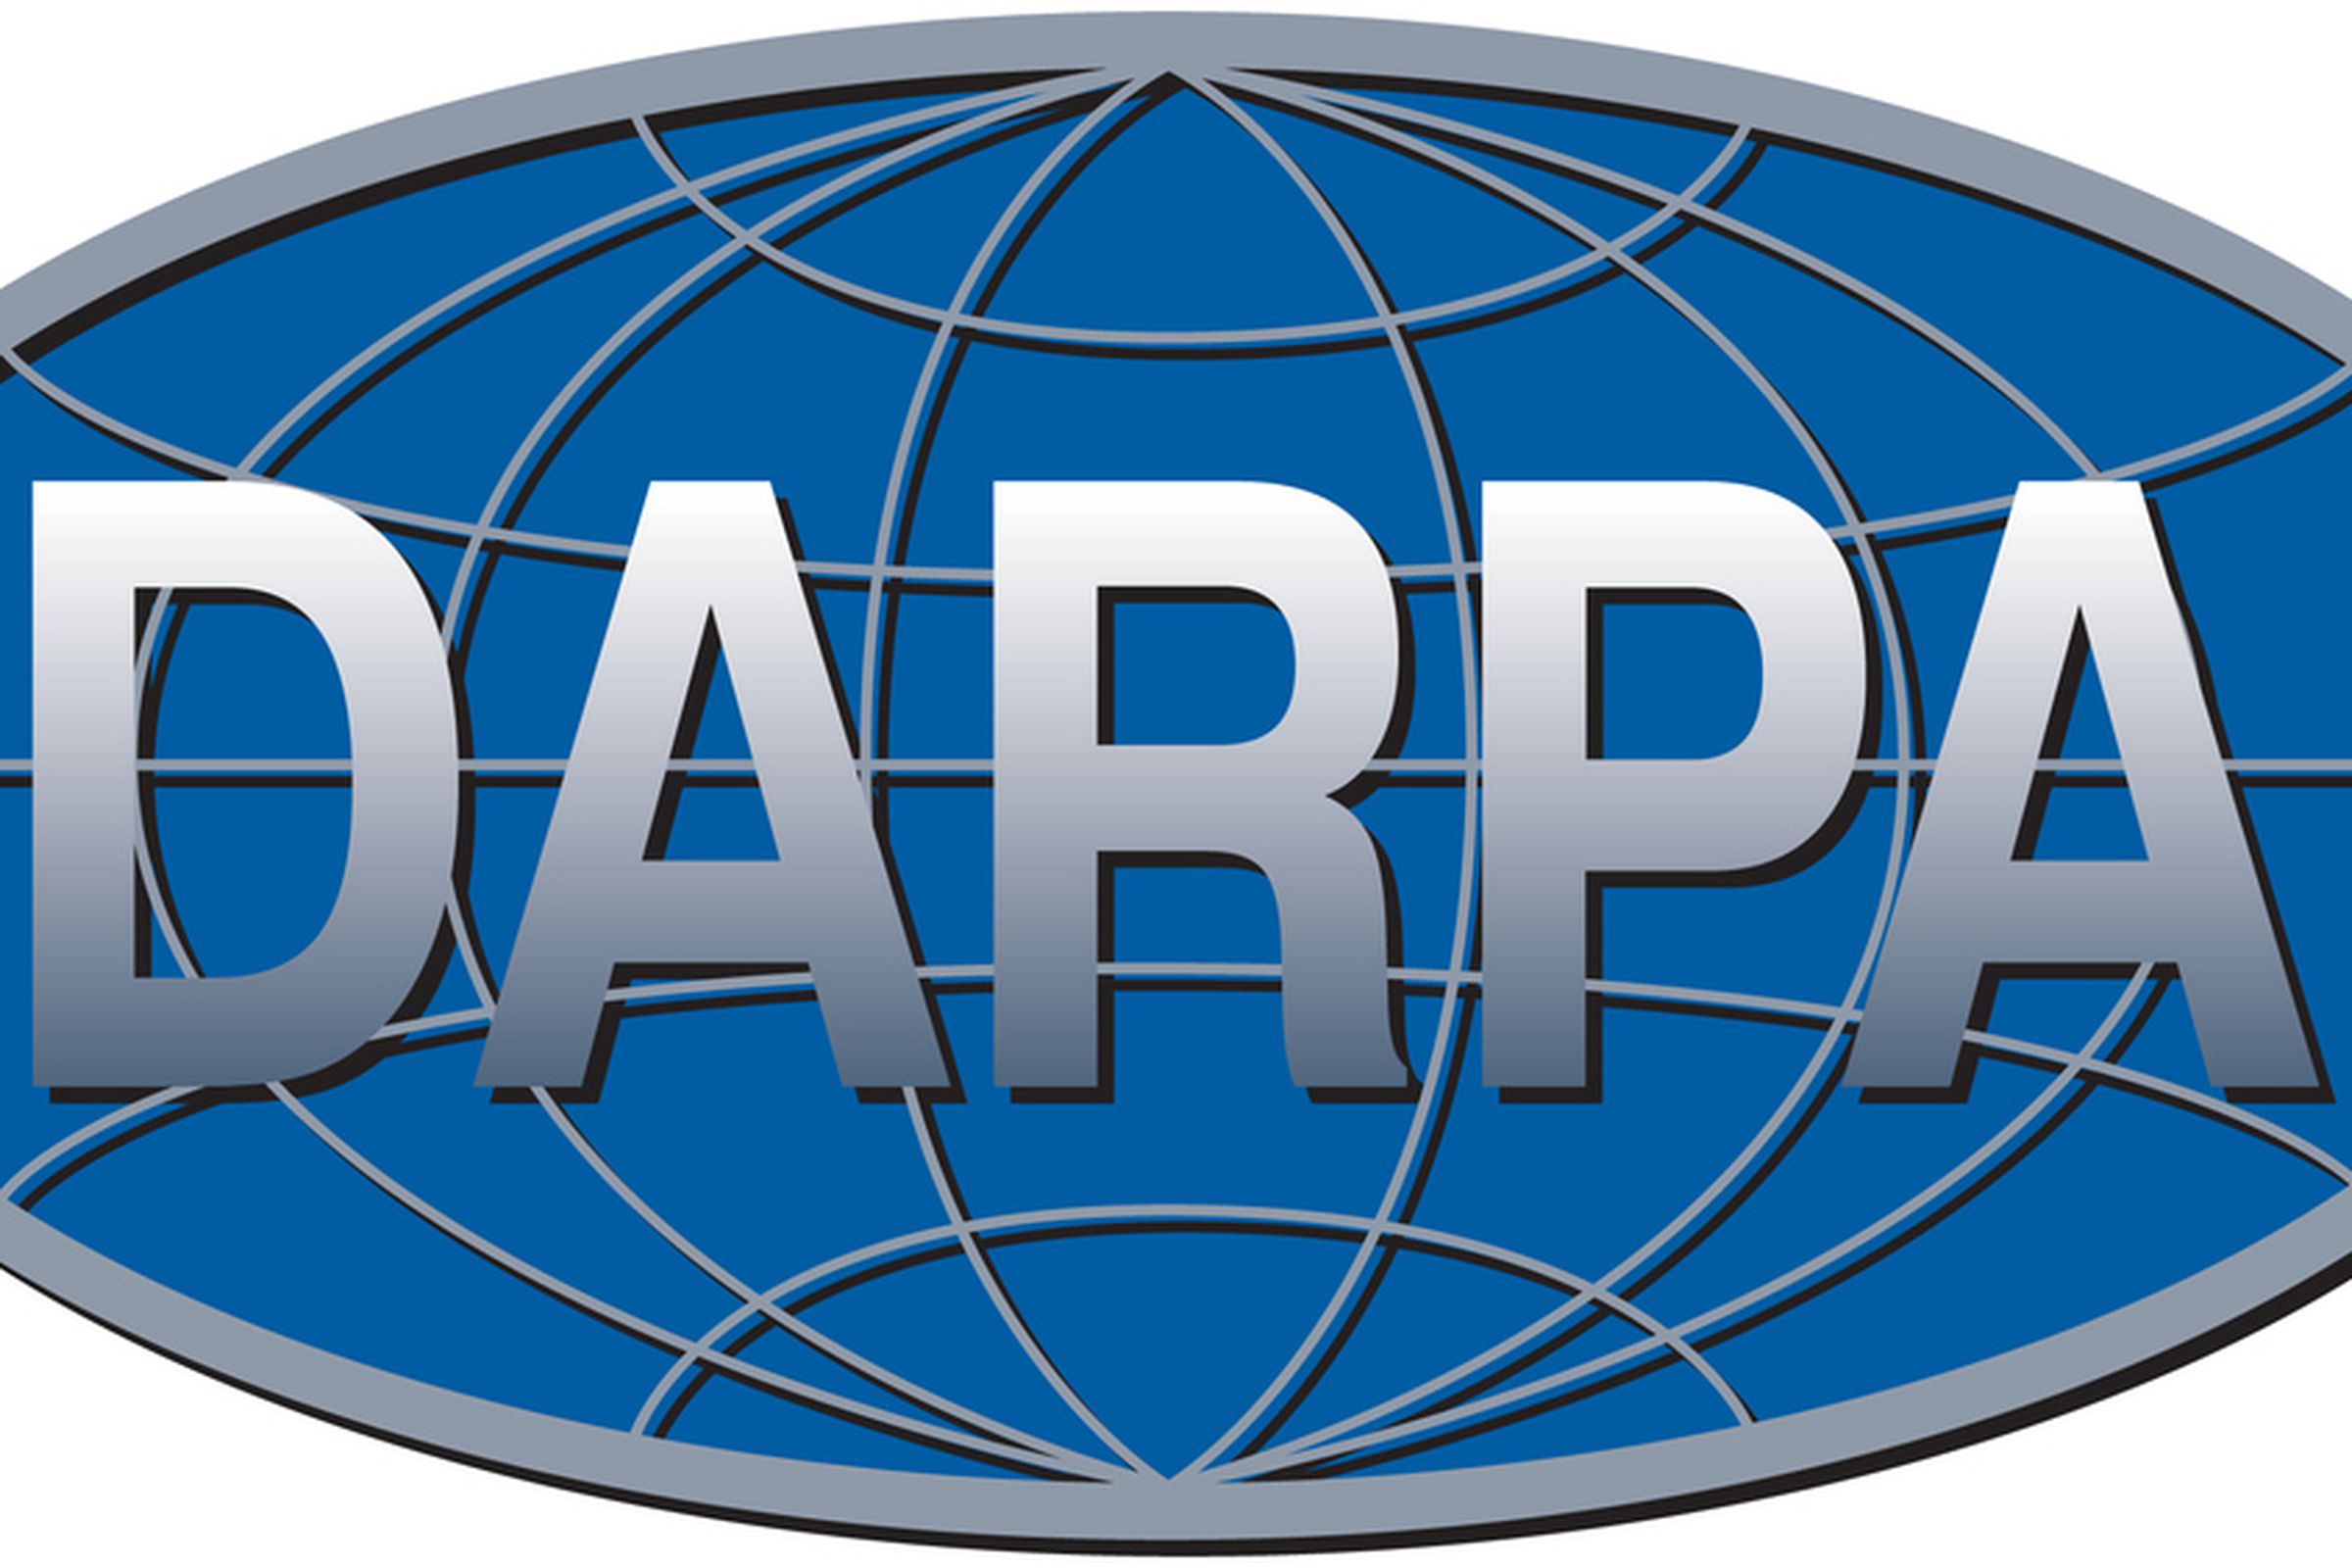 darpa logo wikimedia